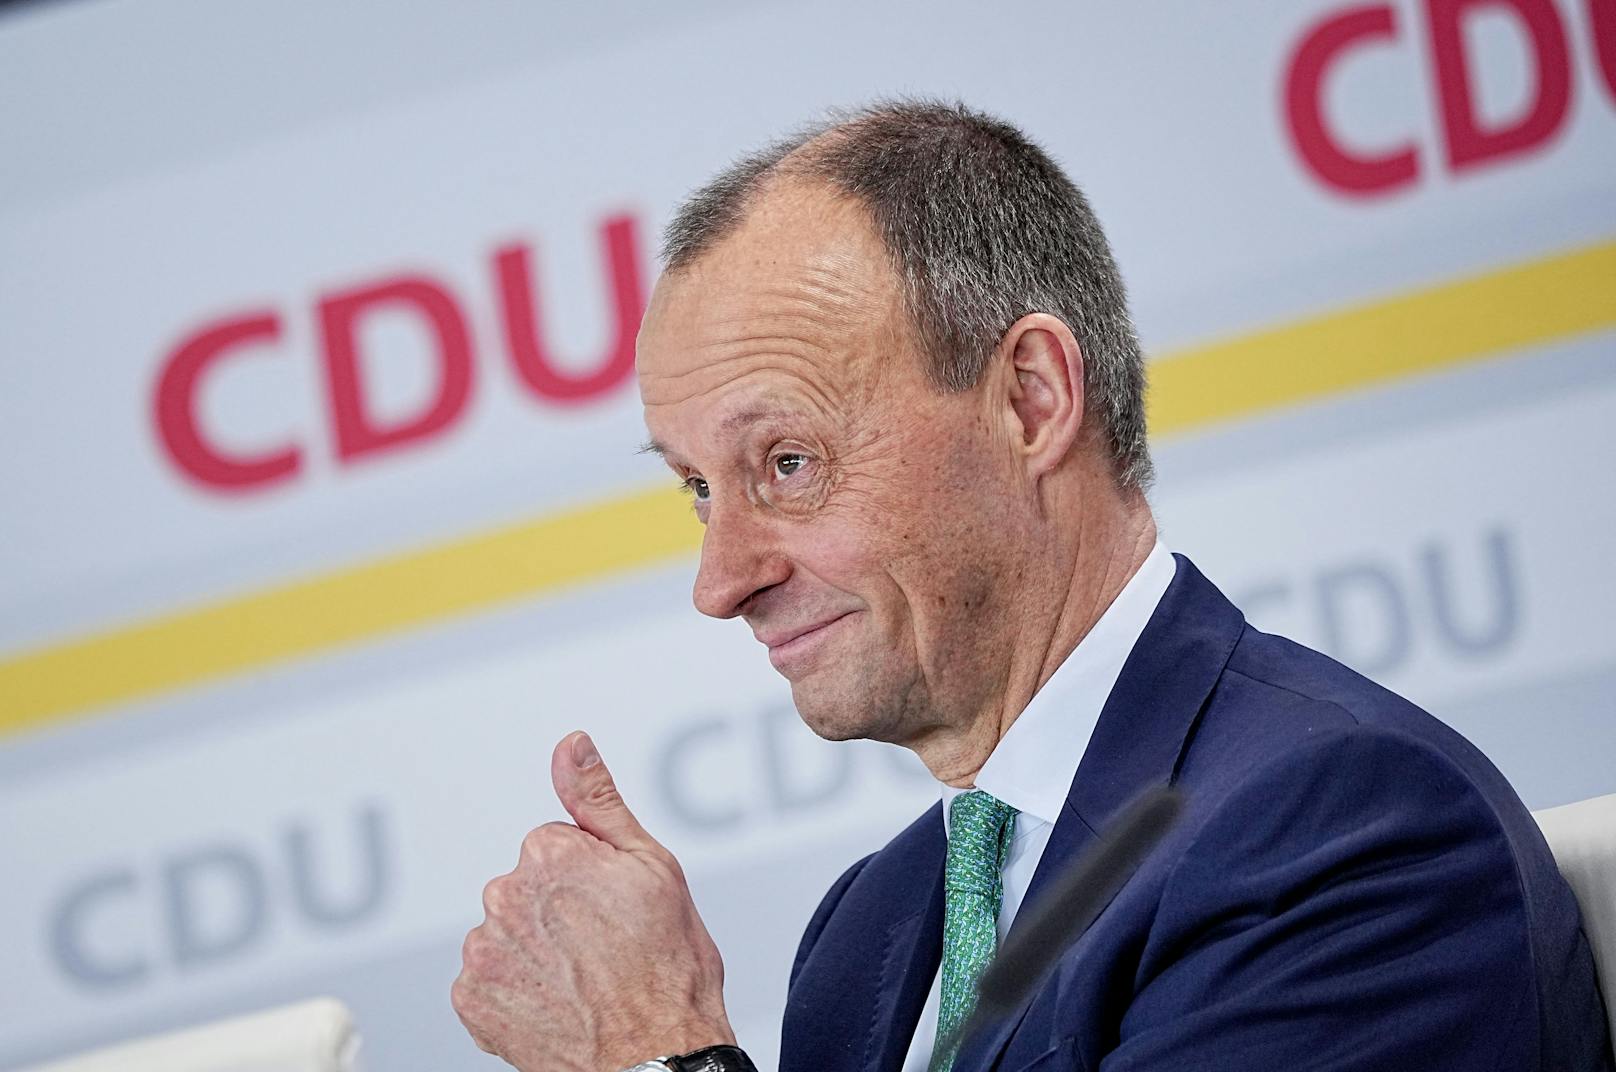 Nehammer gratuliert – Merz zum neuen CDU-Chef gewählt